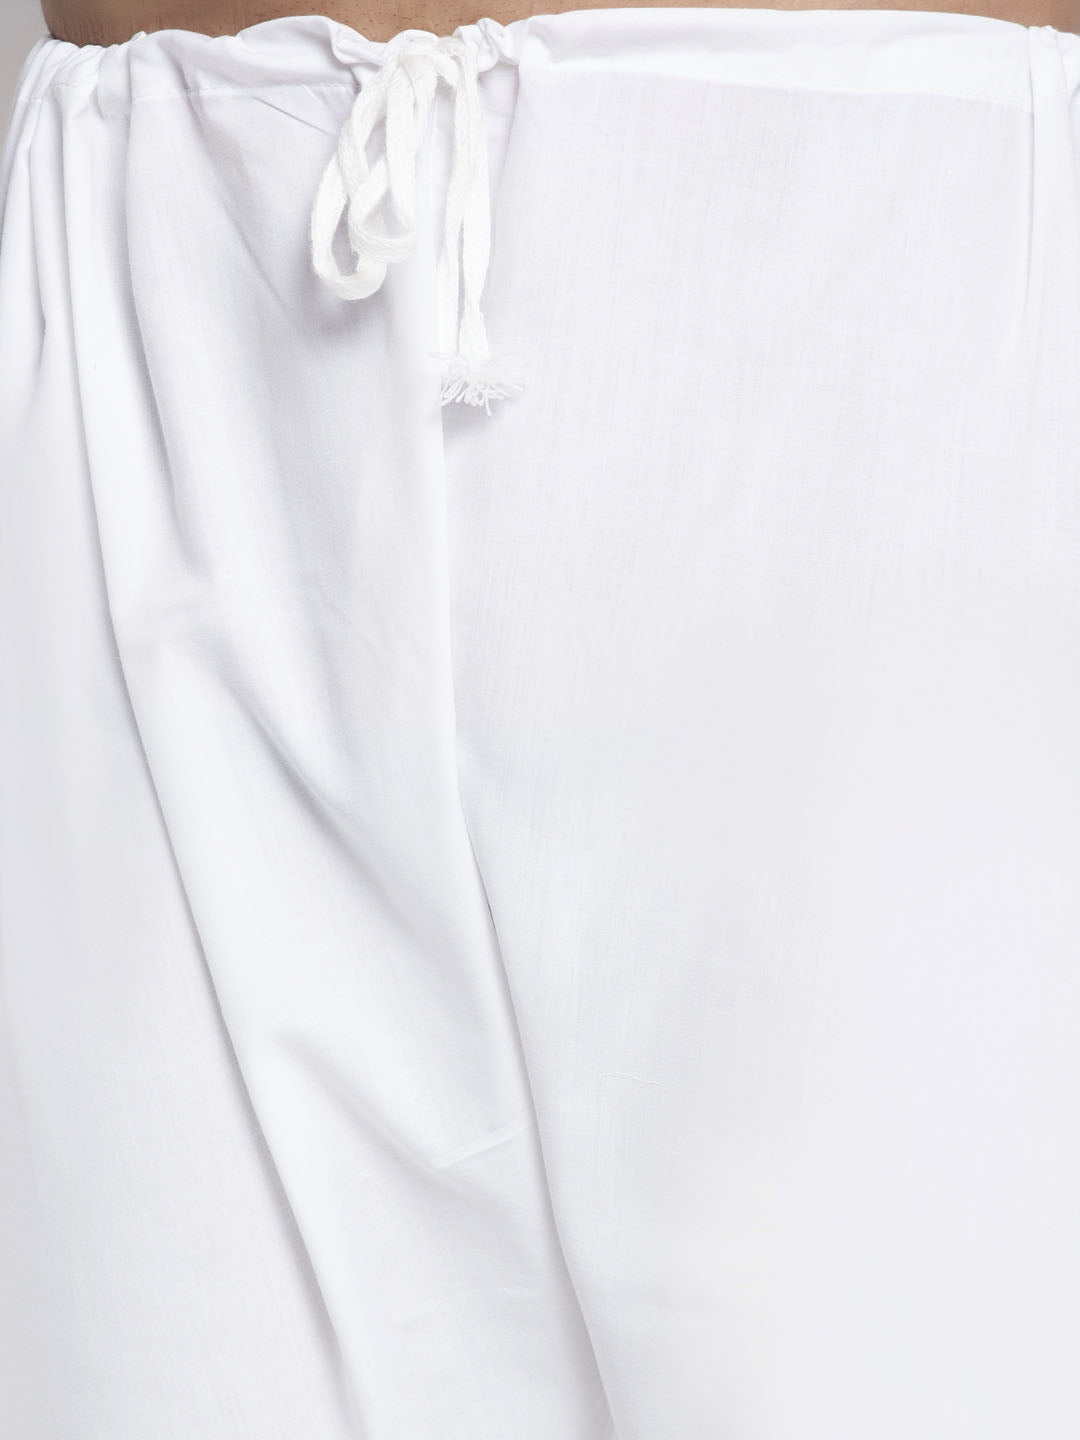 Men's Maroon & White Woven Design Kurta with Pyjamas ( JOKP 637 Maroon ) - Virat Fashions